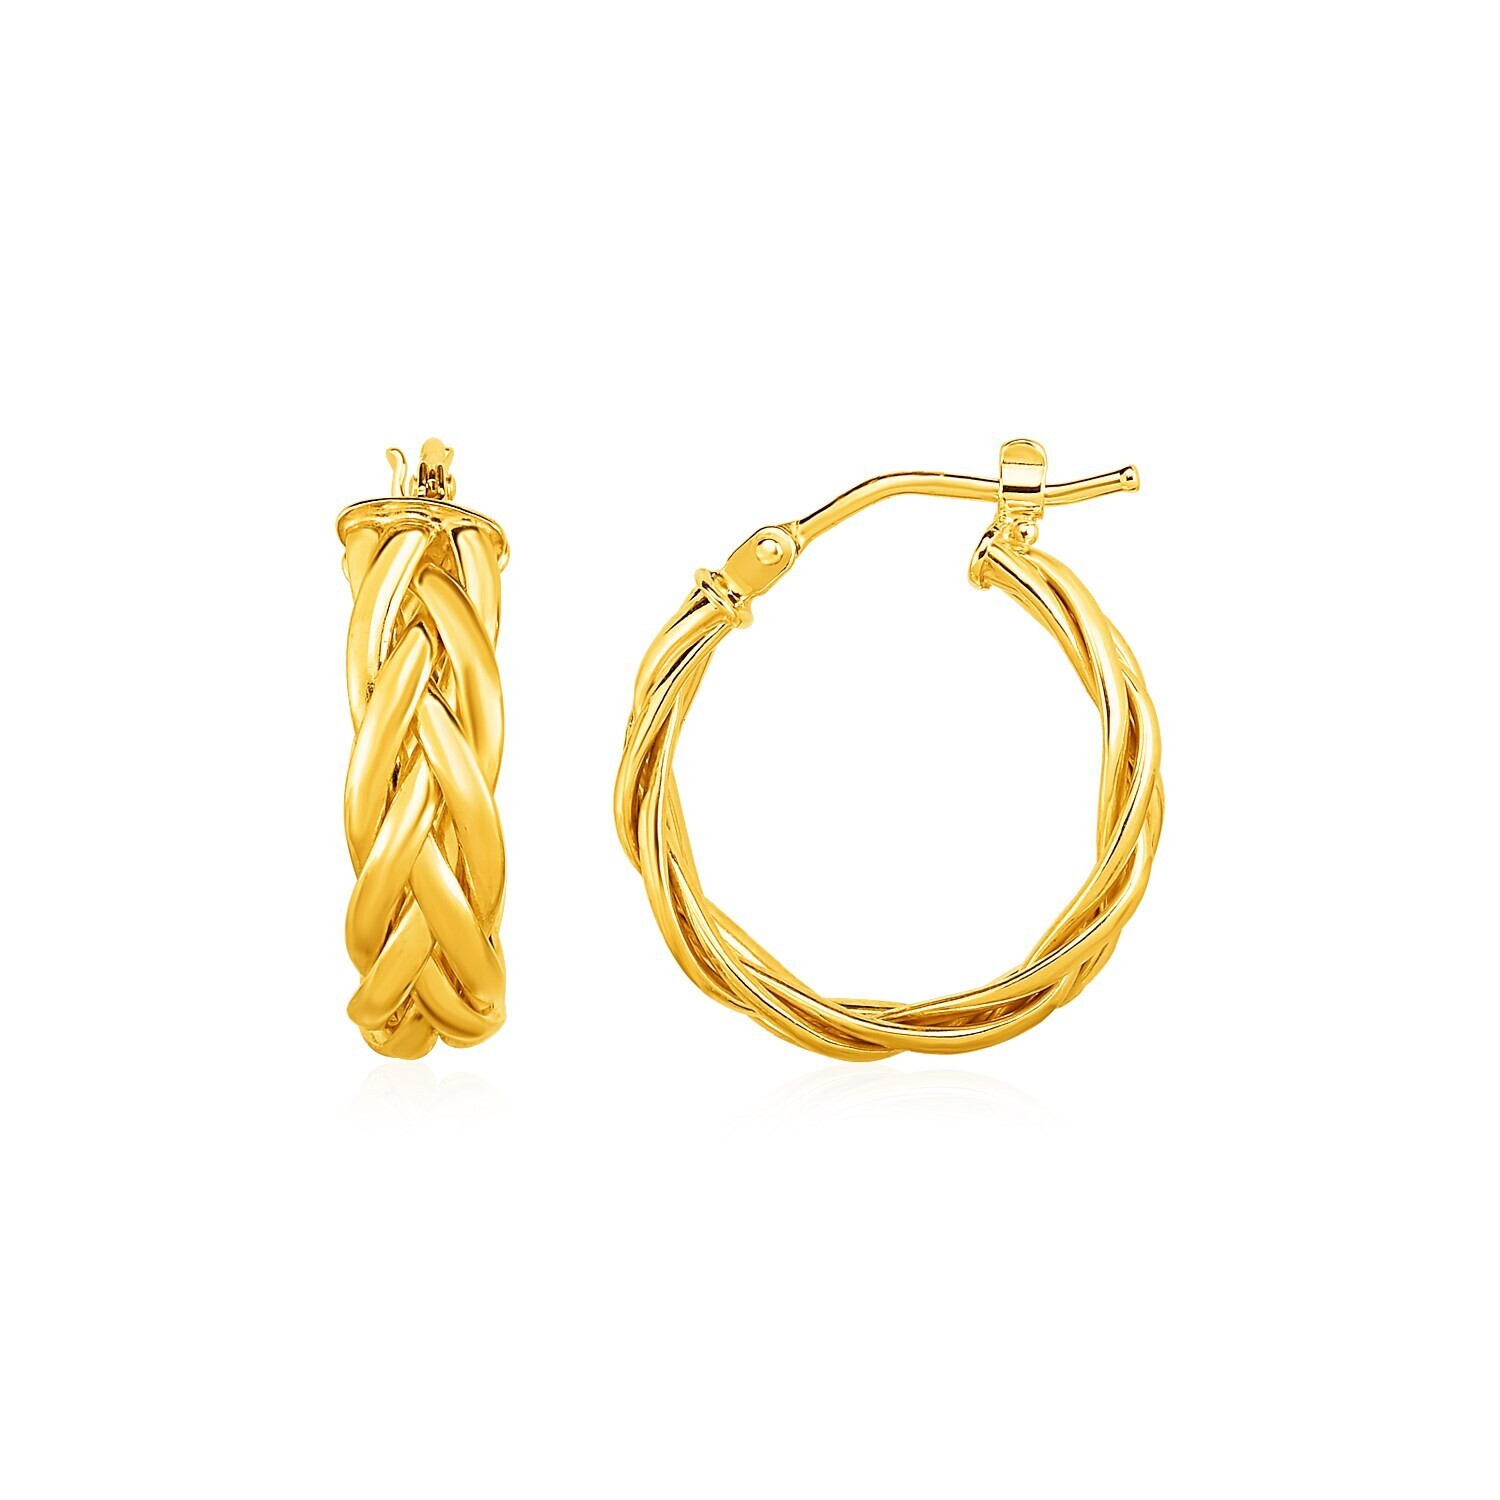 Shiny Braided Hoop Earrings in 14k Yellow Gold